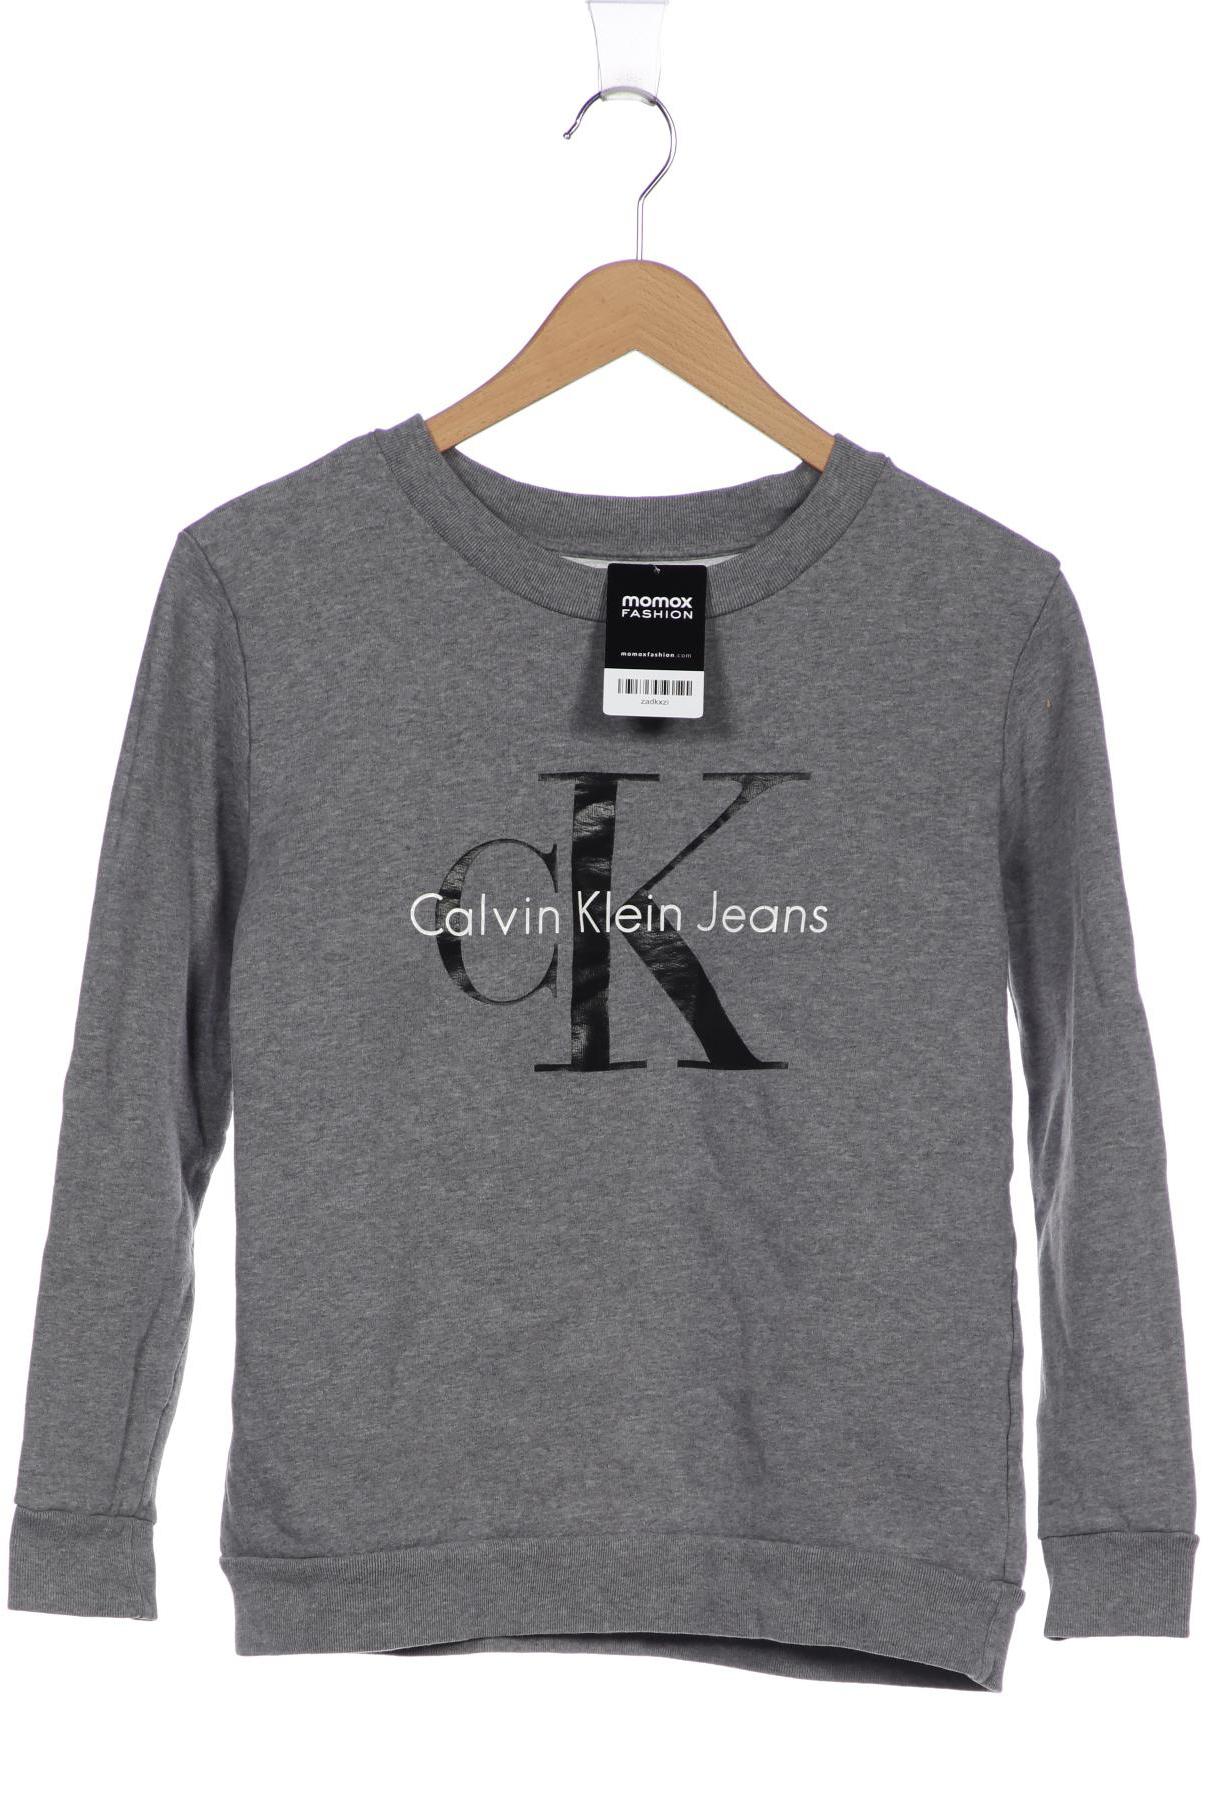 Calvin Klein Jeans Damen Sweatshirt, grau von Calvin Klein Jeans